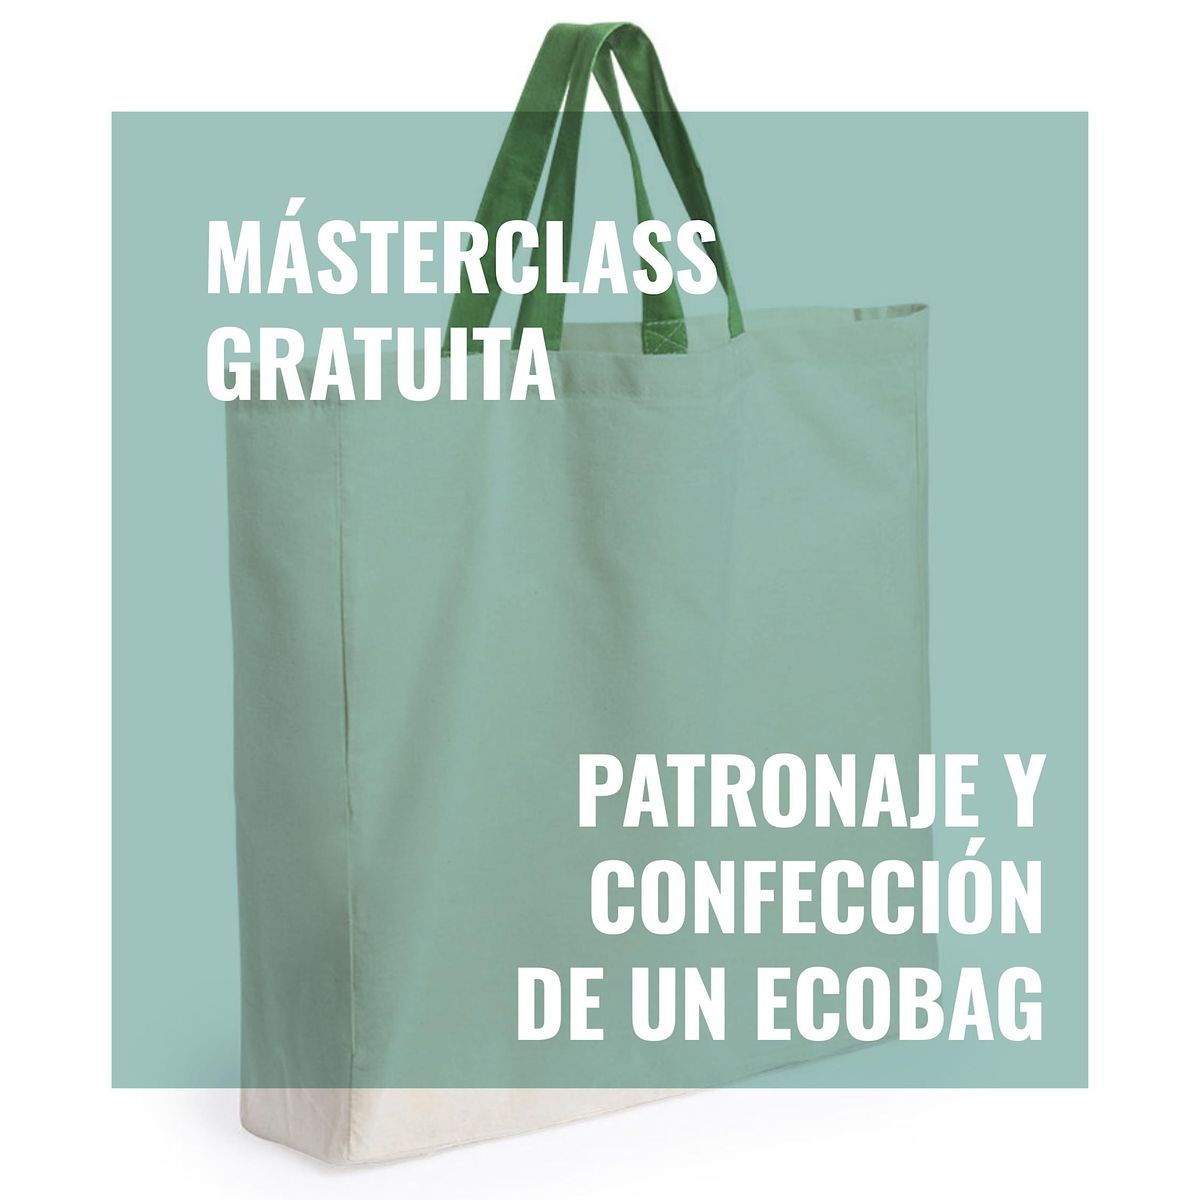 Masterclass  Patronaje y Confecci\u00f3n Ecobag